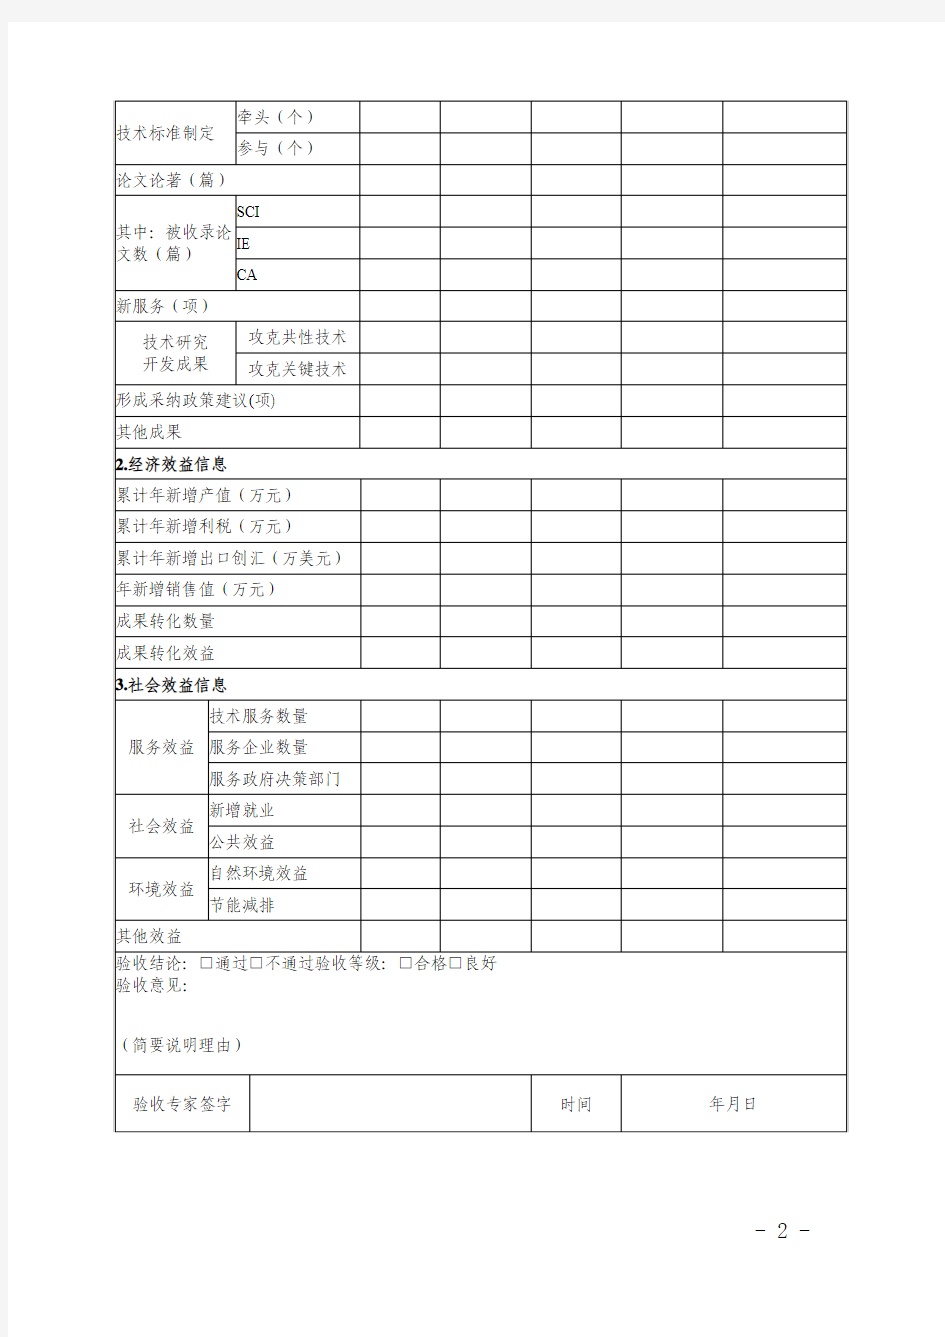 广东省科技计划项目会议验收结题专家意见表(模板)